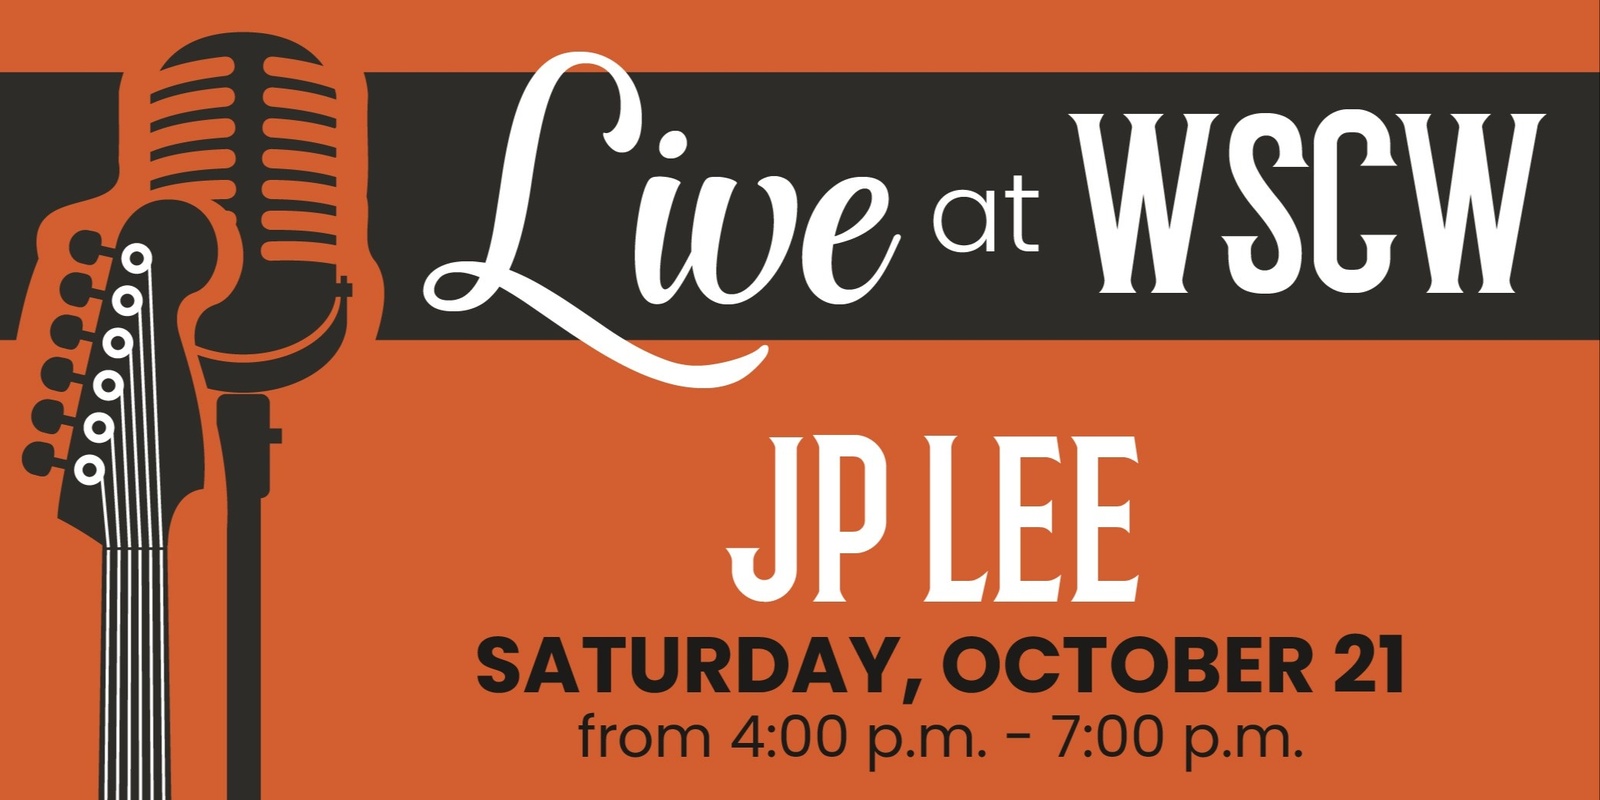 Banner image for JP Lee Live at WSCW October 21